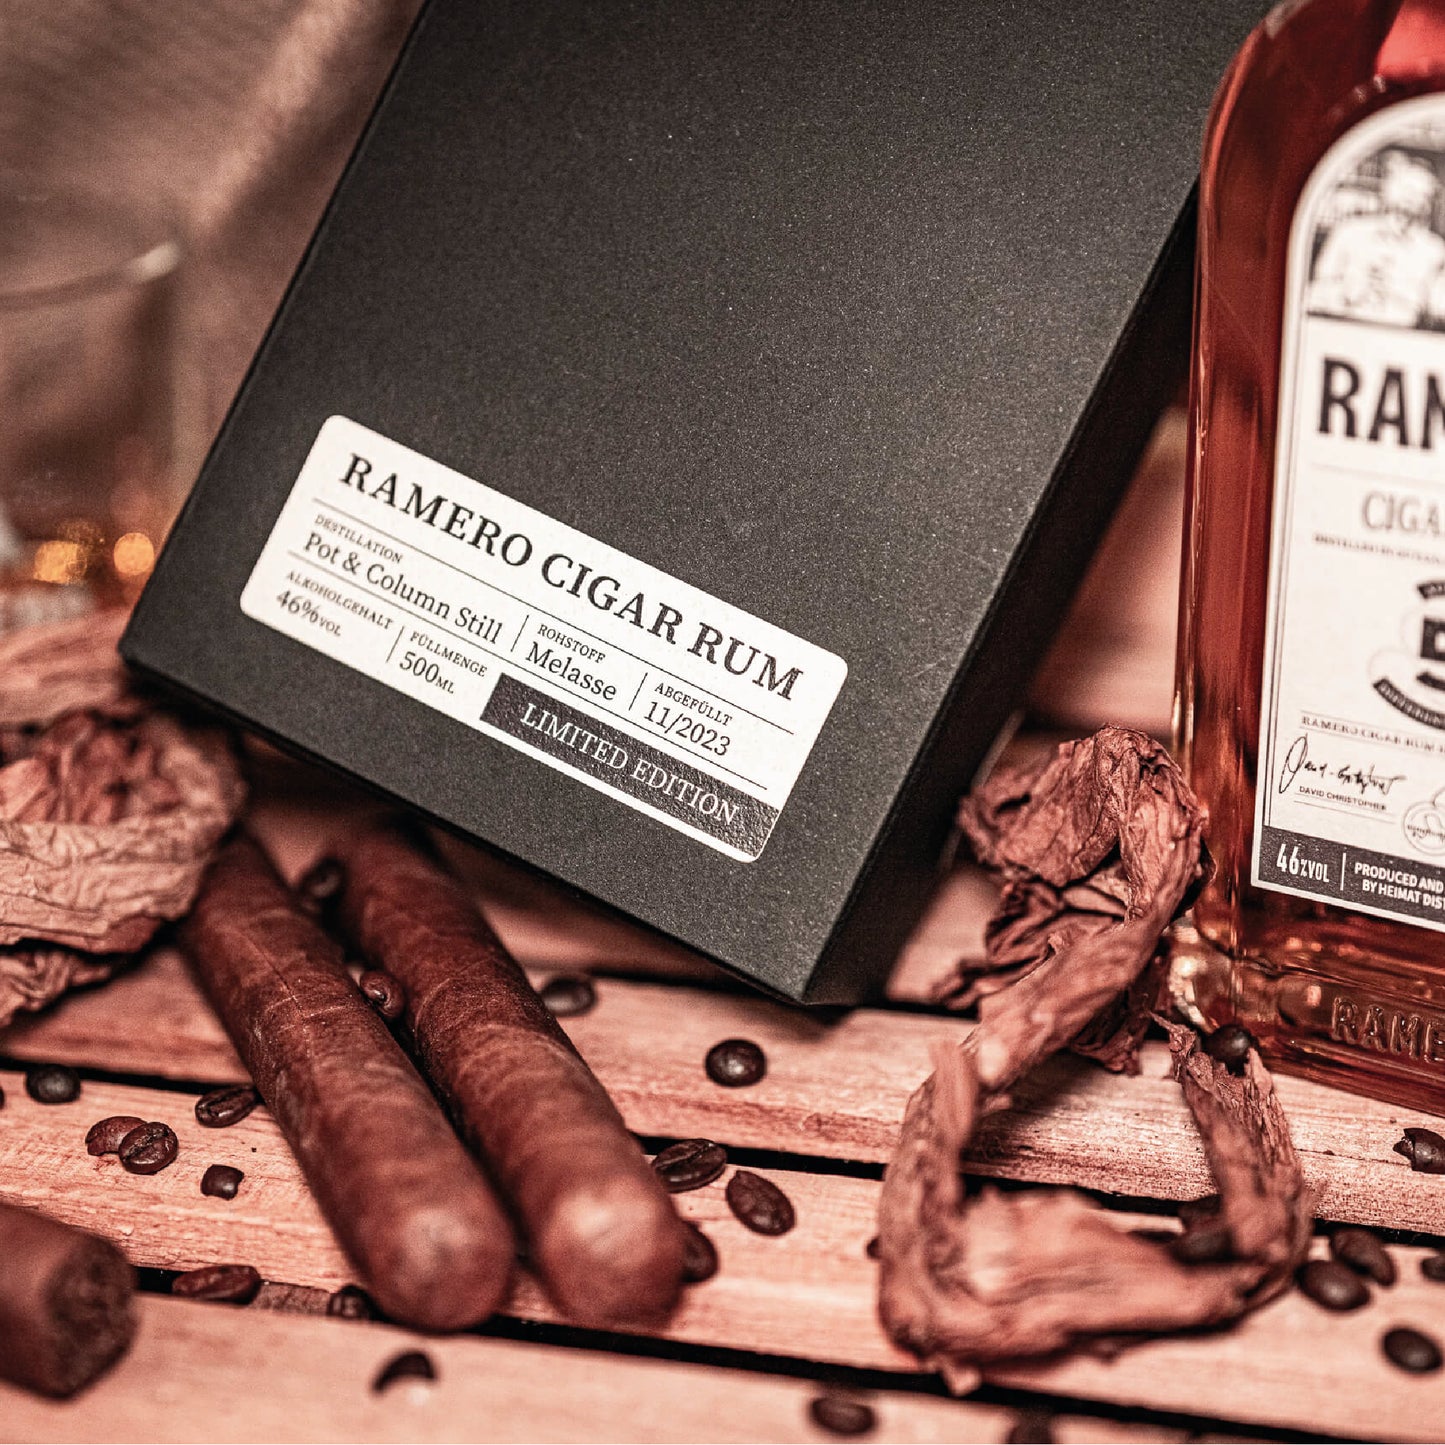 
                  
                    RAMERO X GÖTTERFUNKEN Cigar Rum 46% 500ml
                  
                